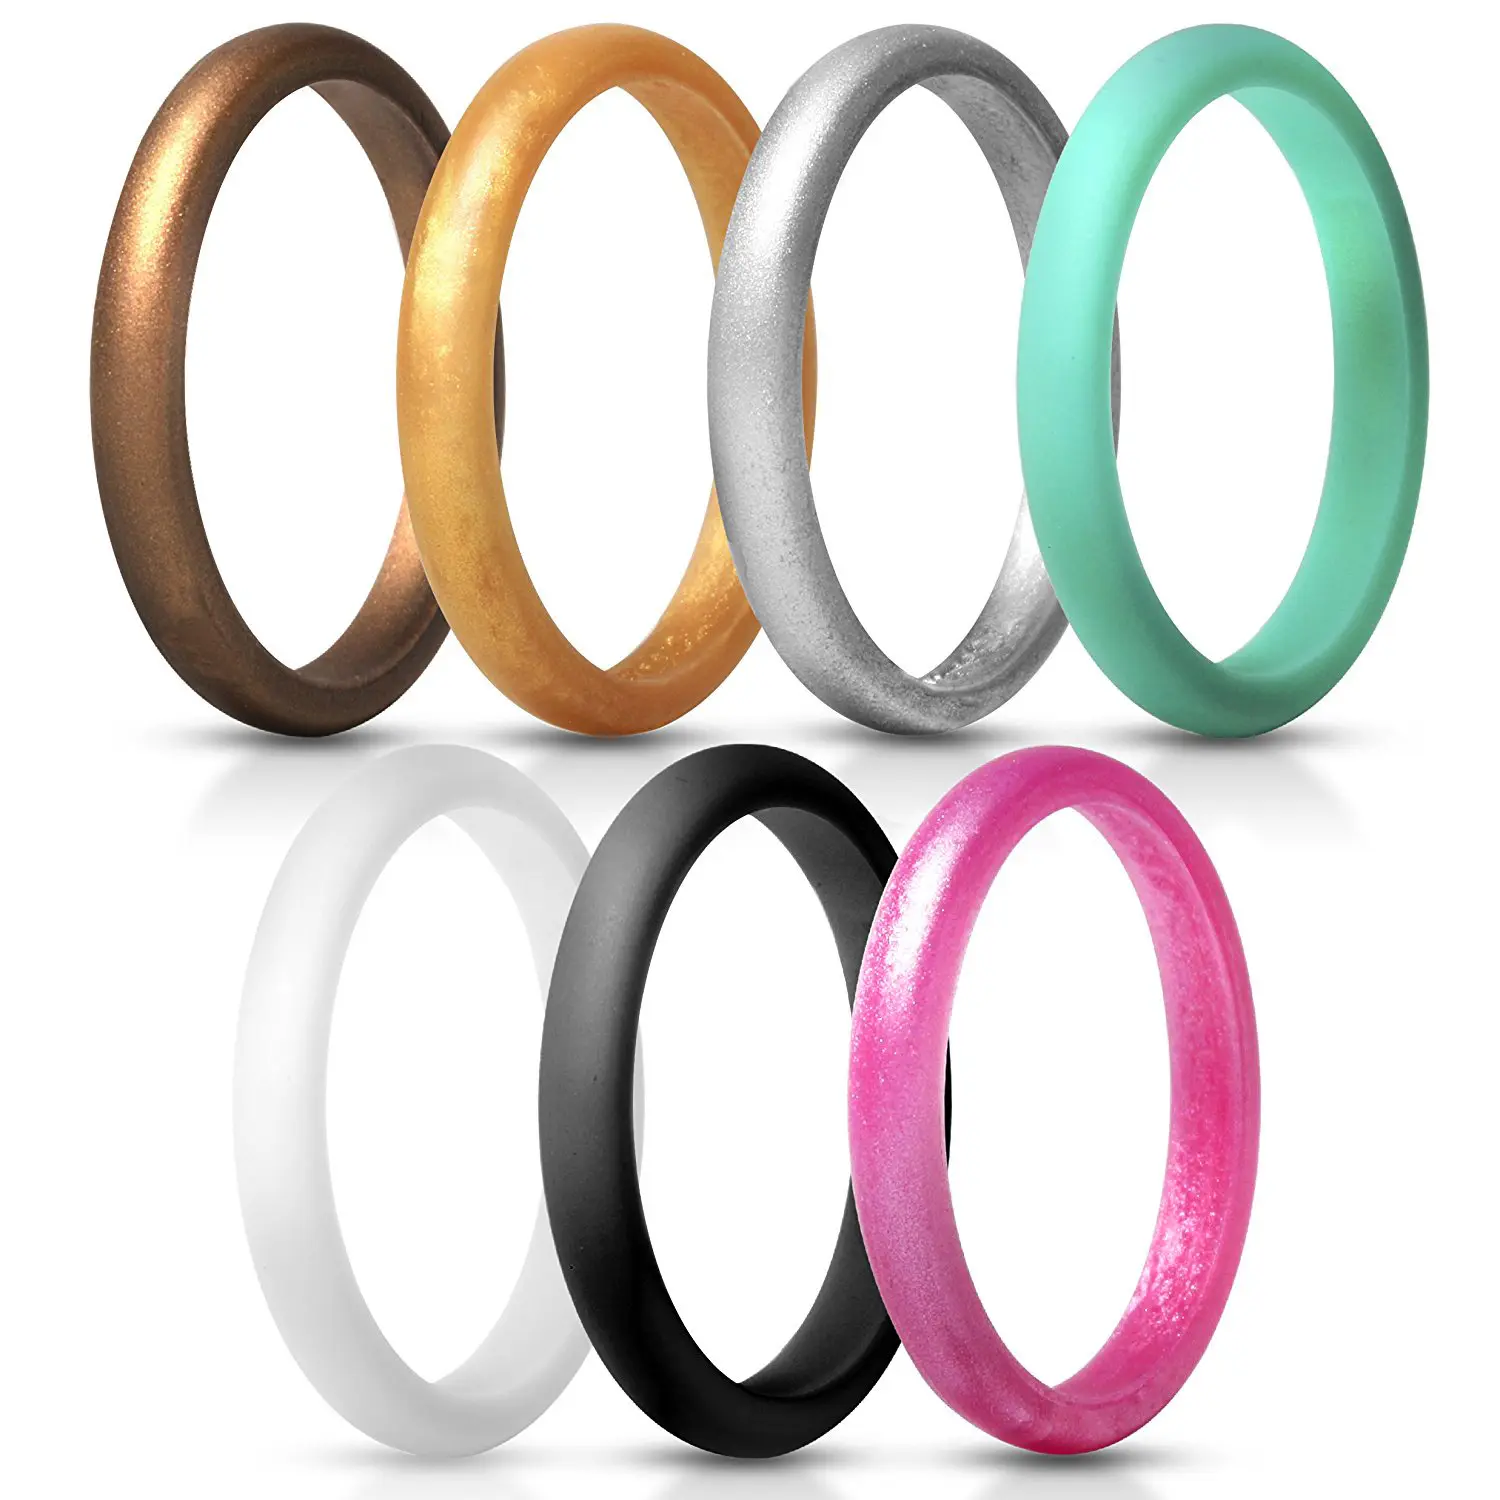 7 видов цветов в одной упаковке уникальный 2,7 мм ширина толщина 2 мм мягкий резиновый силиконовый обручальные кольца Тонкий силиконовый колец для женщин